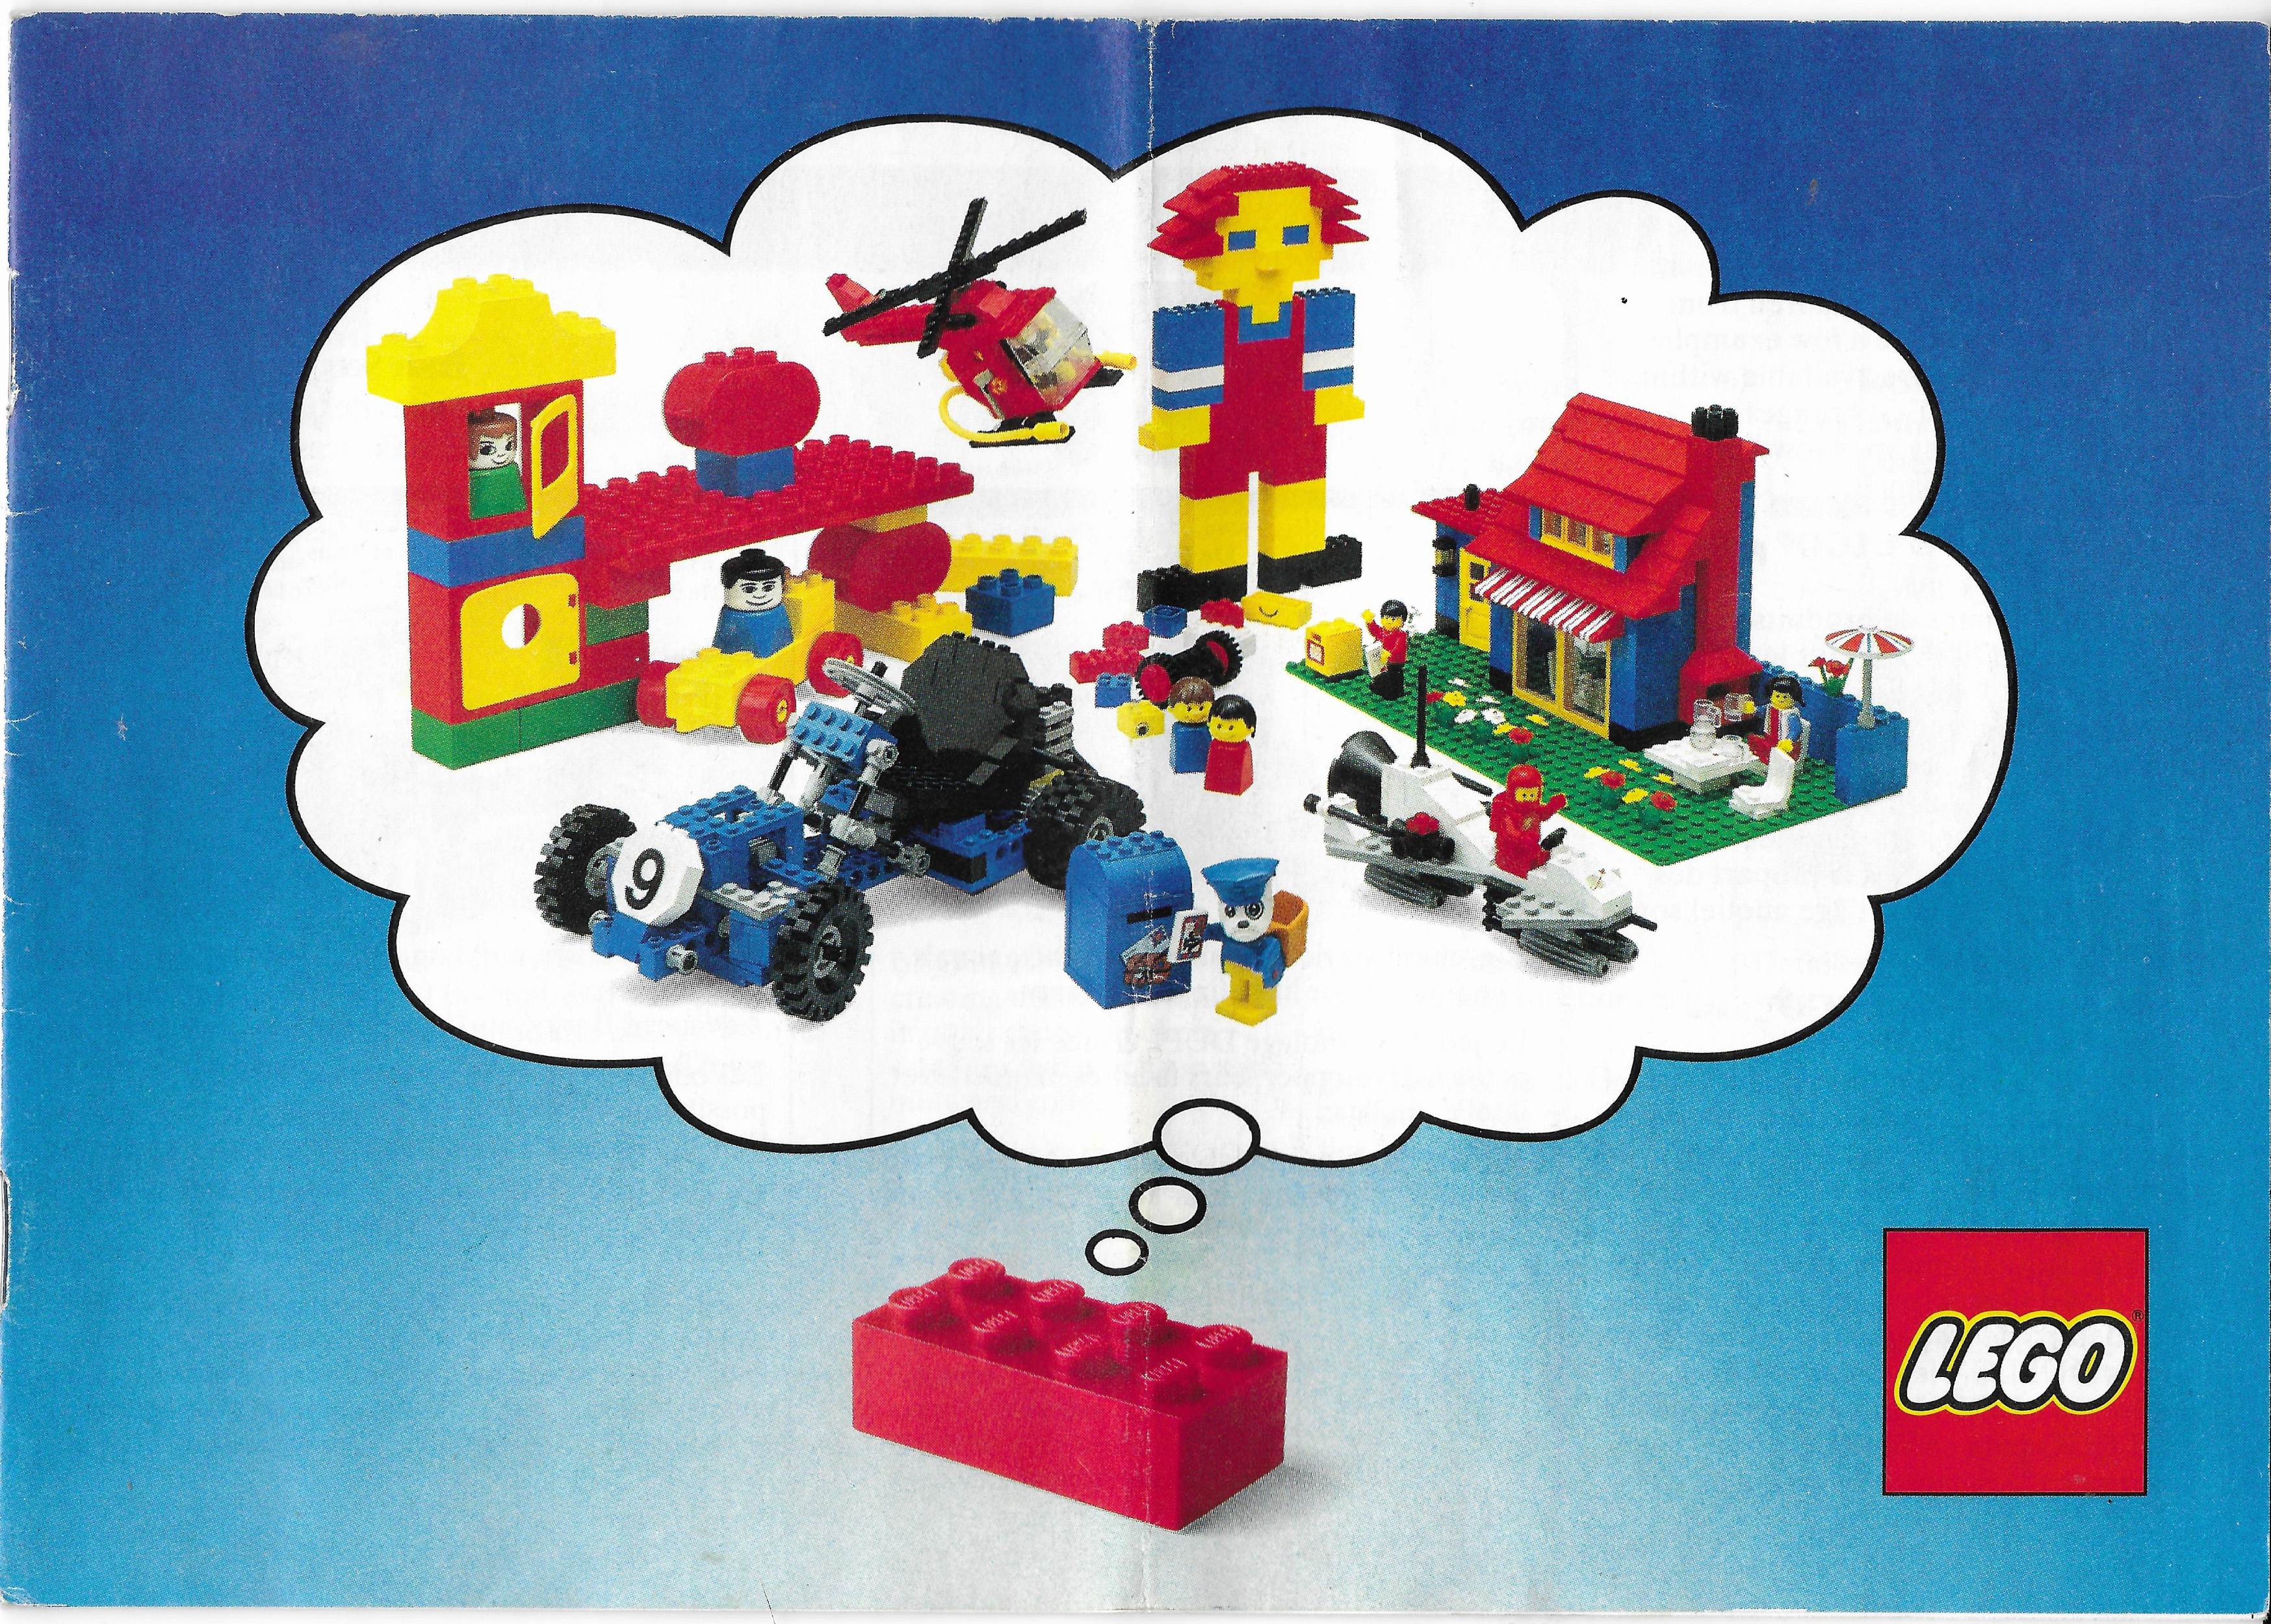 Nyugat-Európai Lego katalógus 1982-ből